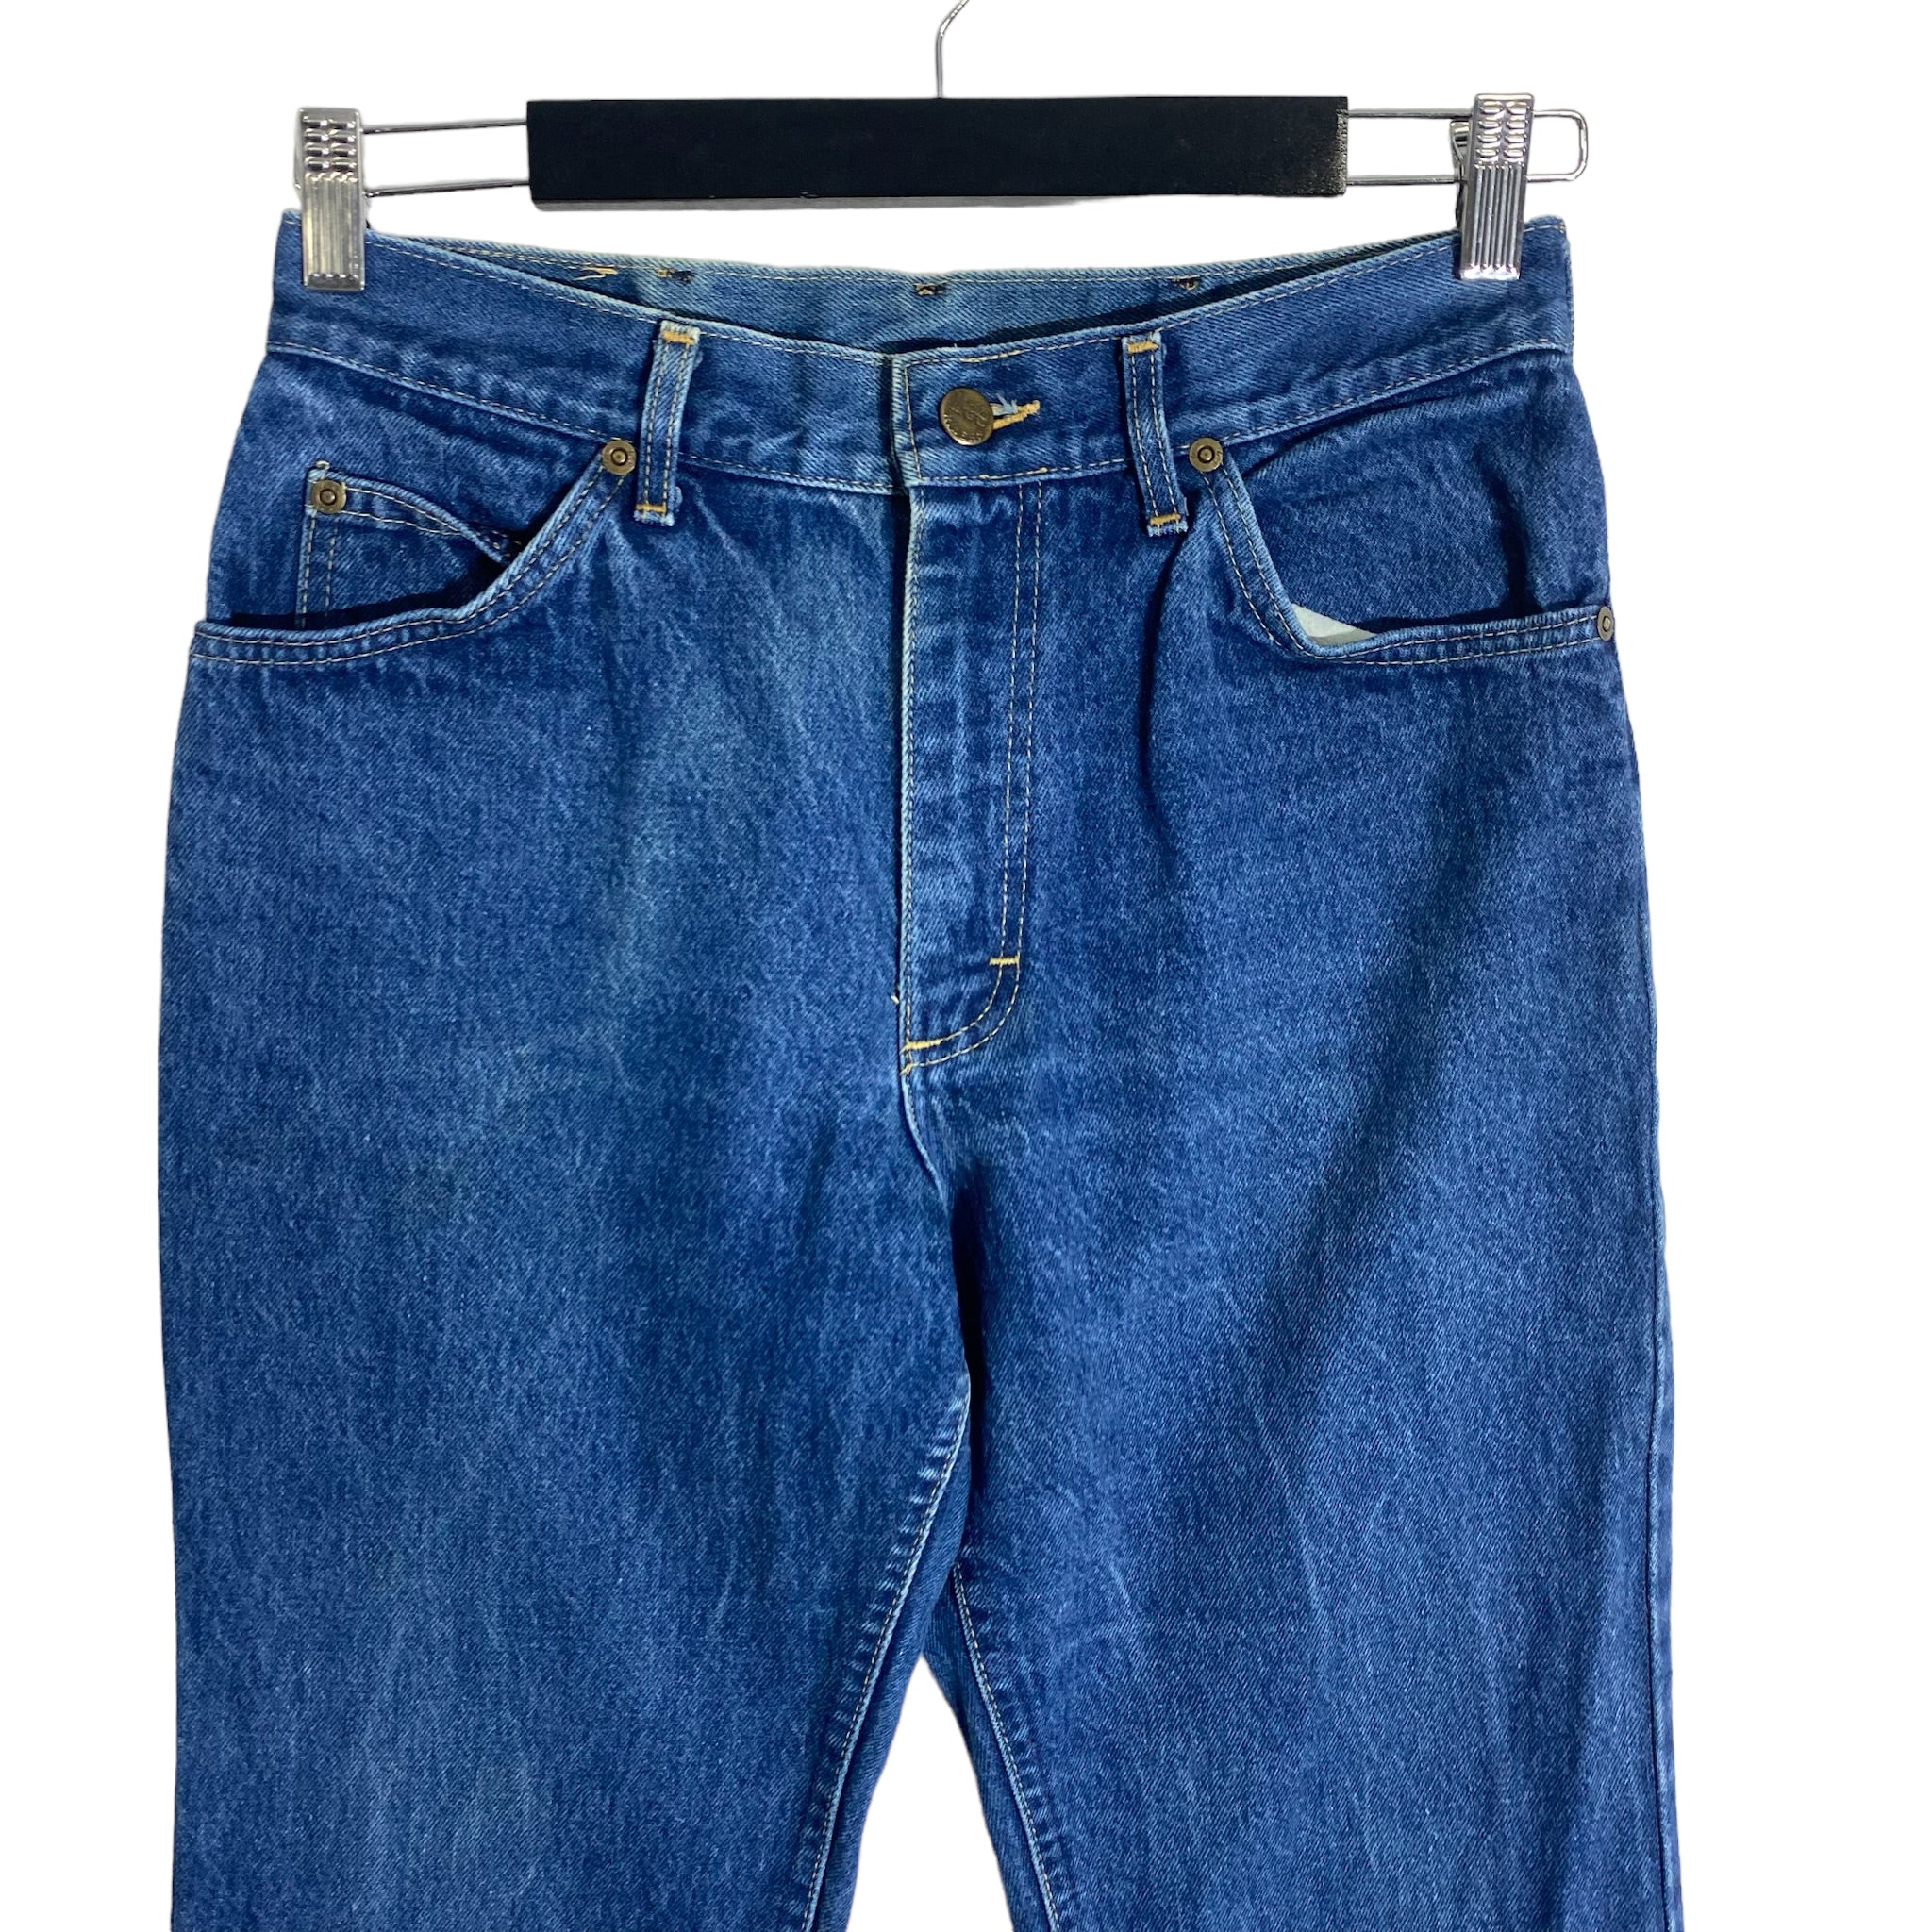 Vintage Lee Bootcut Jeans